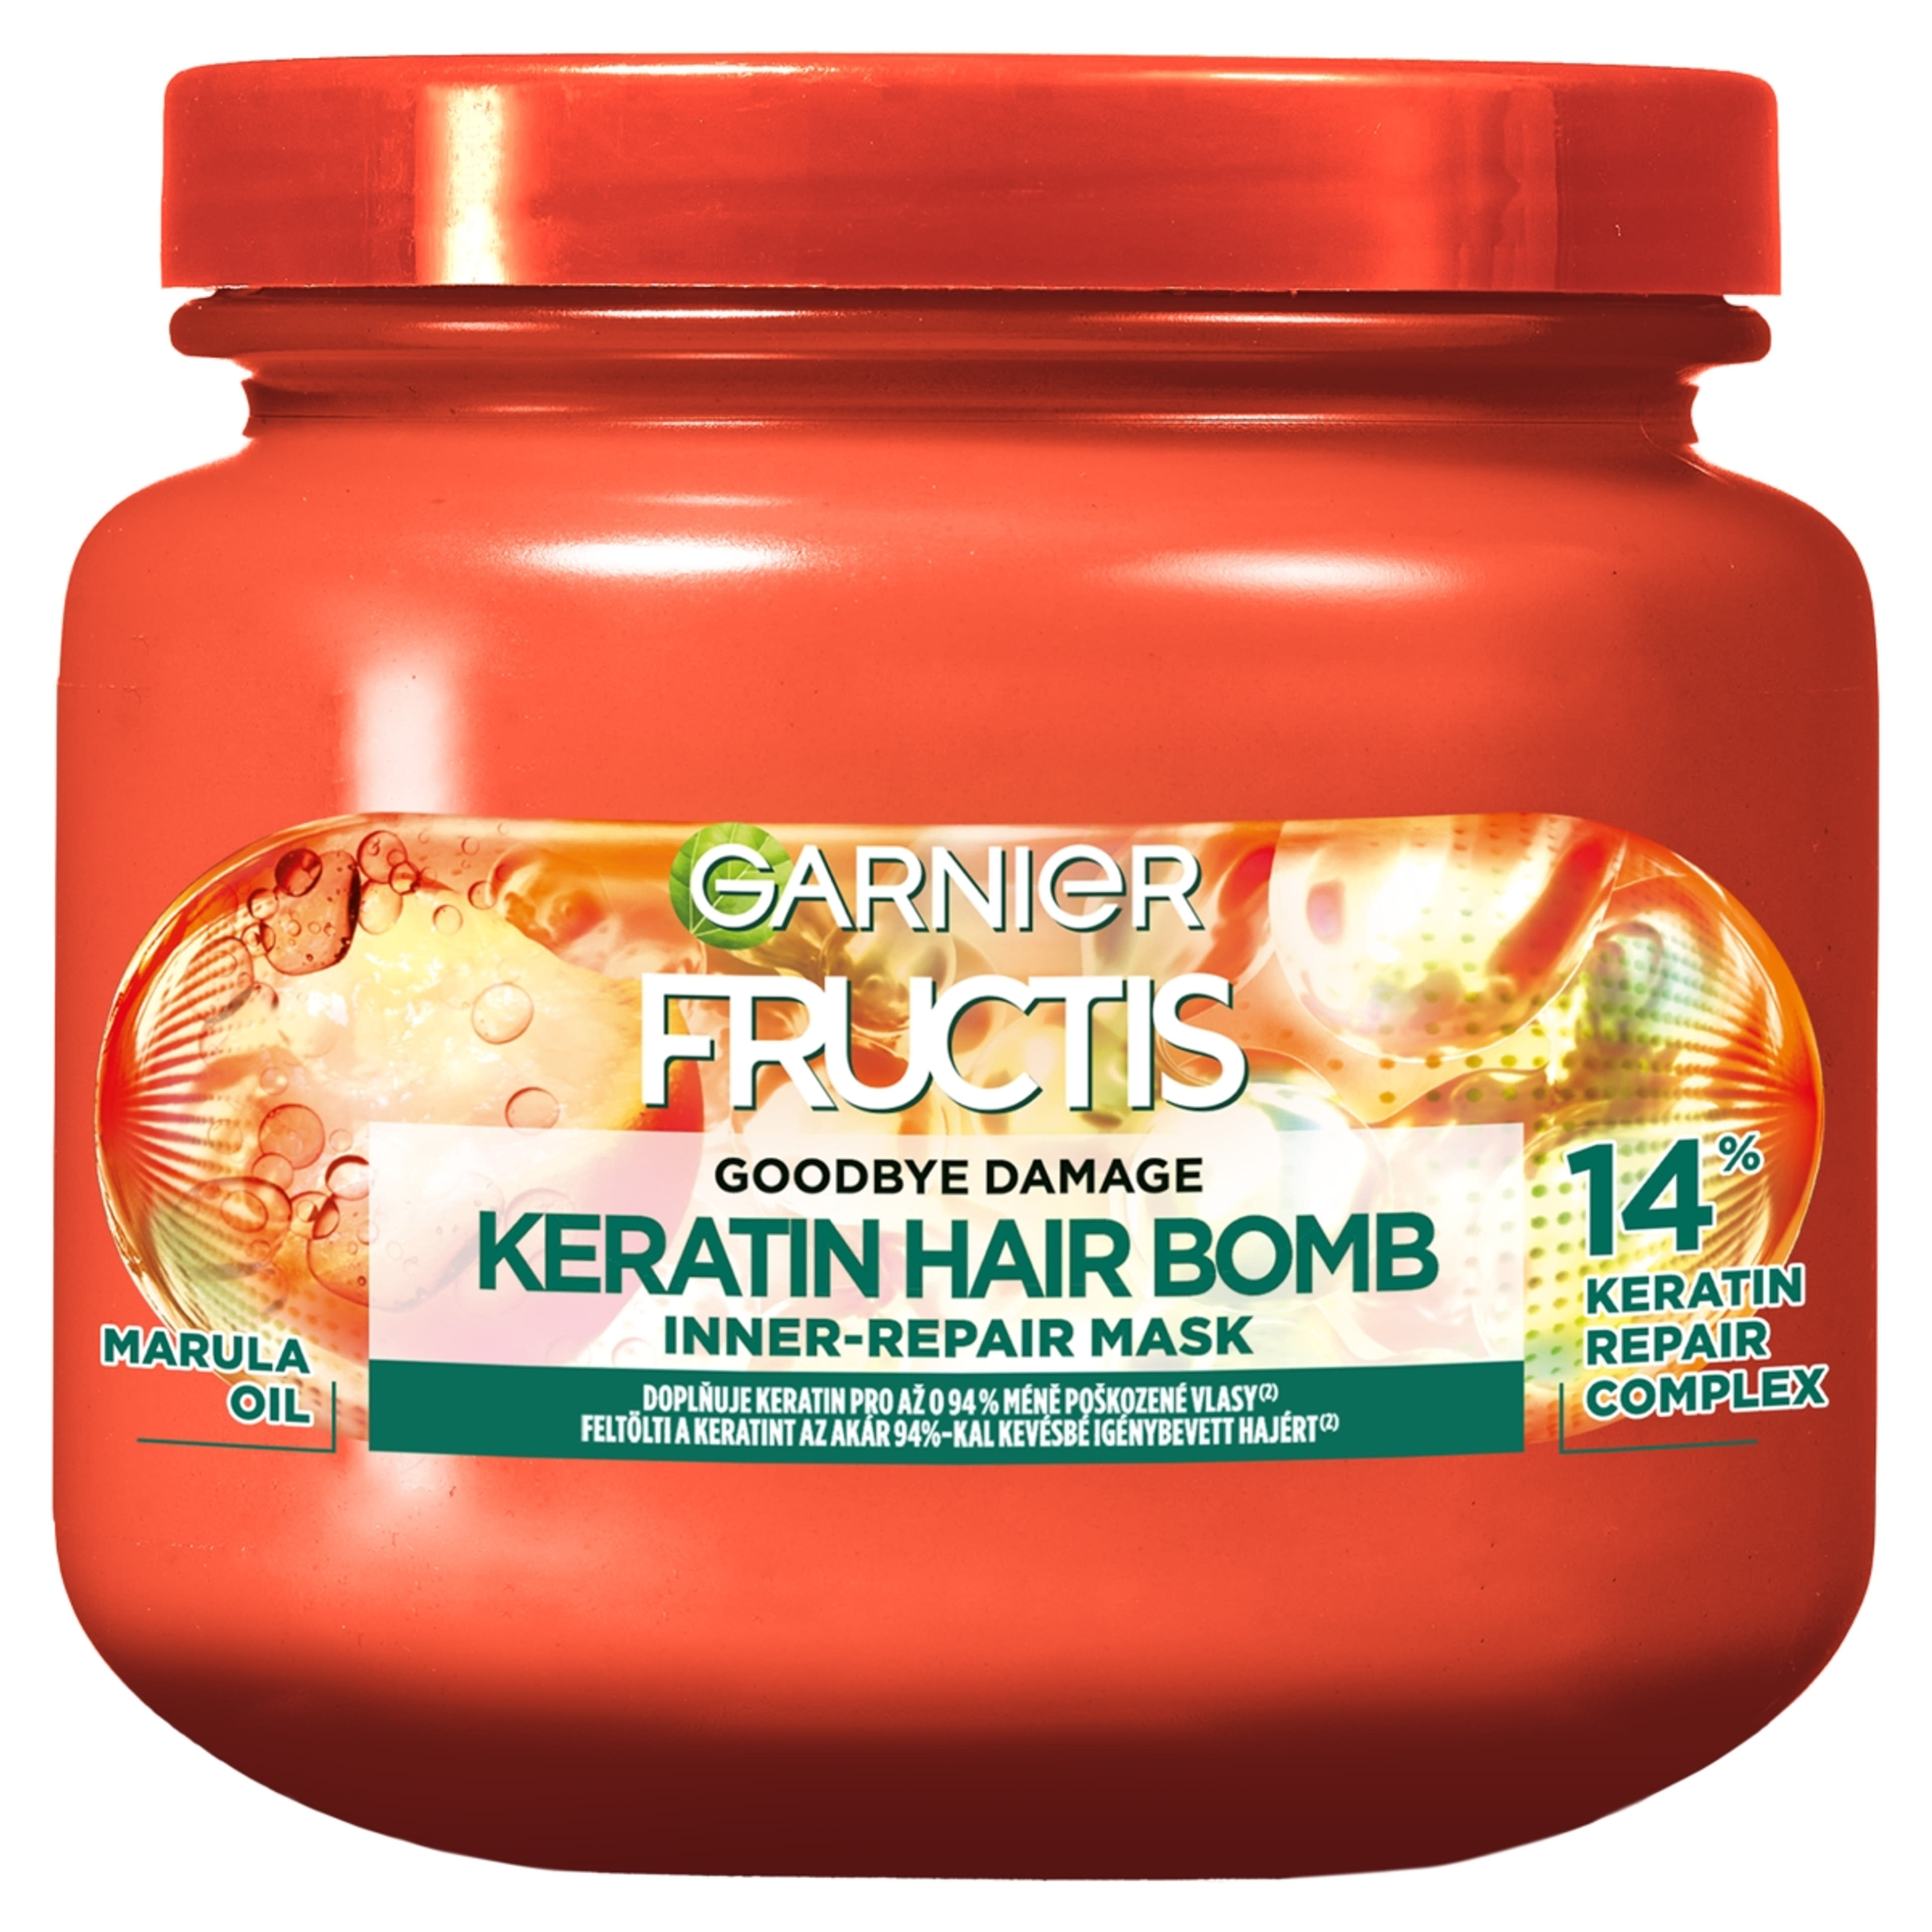 Garnier Fructis Goodbye Damage Keratin Hair Bomb hajmaszk - 320 ml